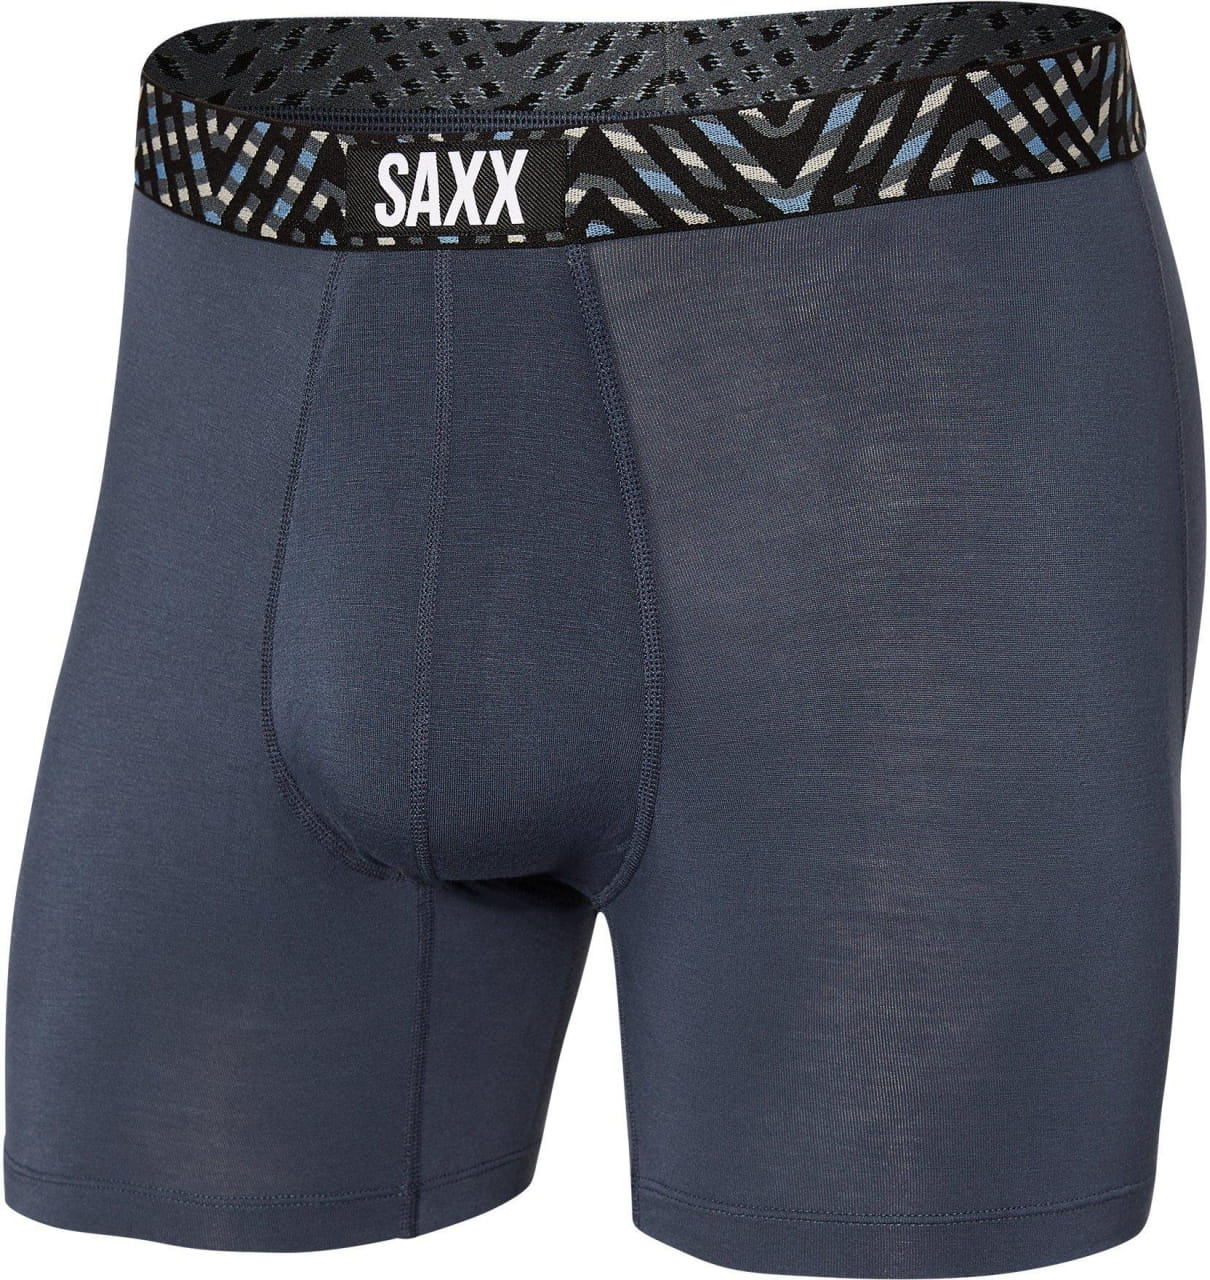 Calzoncillos para hombre Saxx Vibe Super Soft Boxer Brief